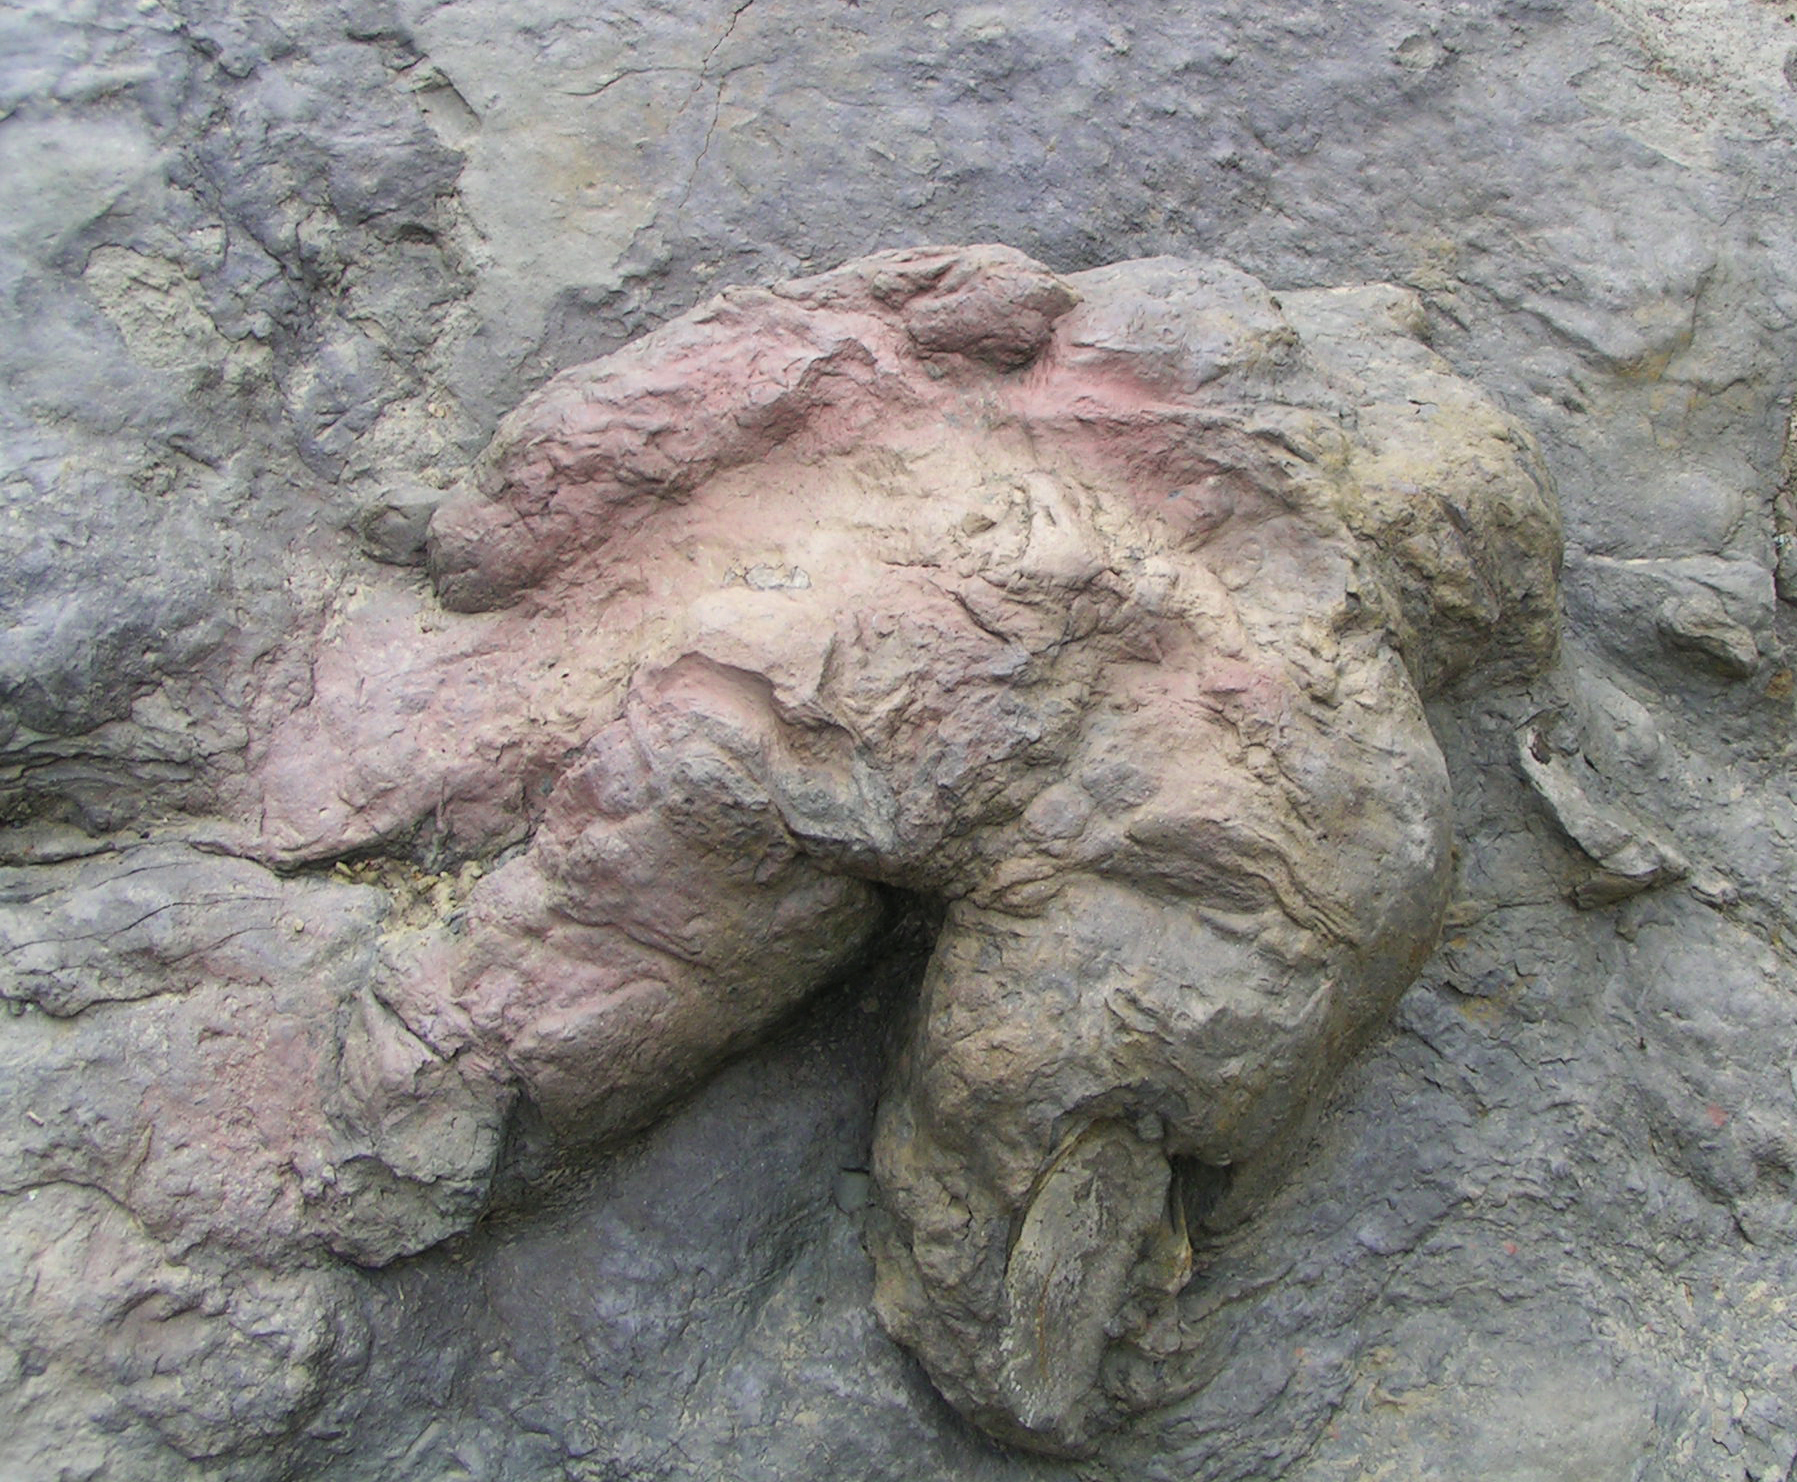 Fosilie ichnotaxonu Tyrannosauripus pillmorei, pravděpodobně stopy vytvořené před 66 miliony let dospělým jedincem tyranosaura. Formálně popsána byla roku 1994 a nové exempláře patrně stejného ichnotaxonu byly představeny právě v aktuálně publikované